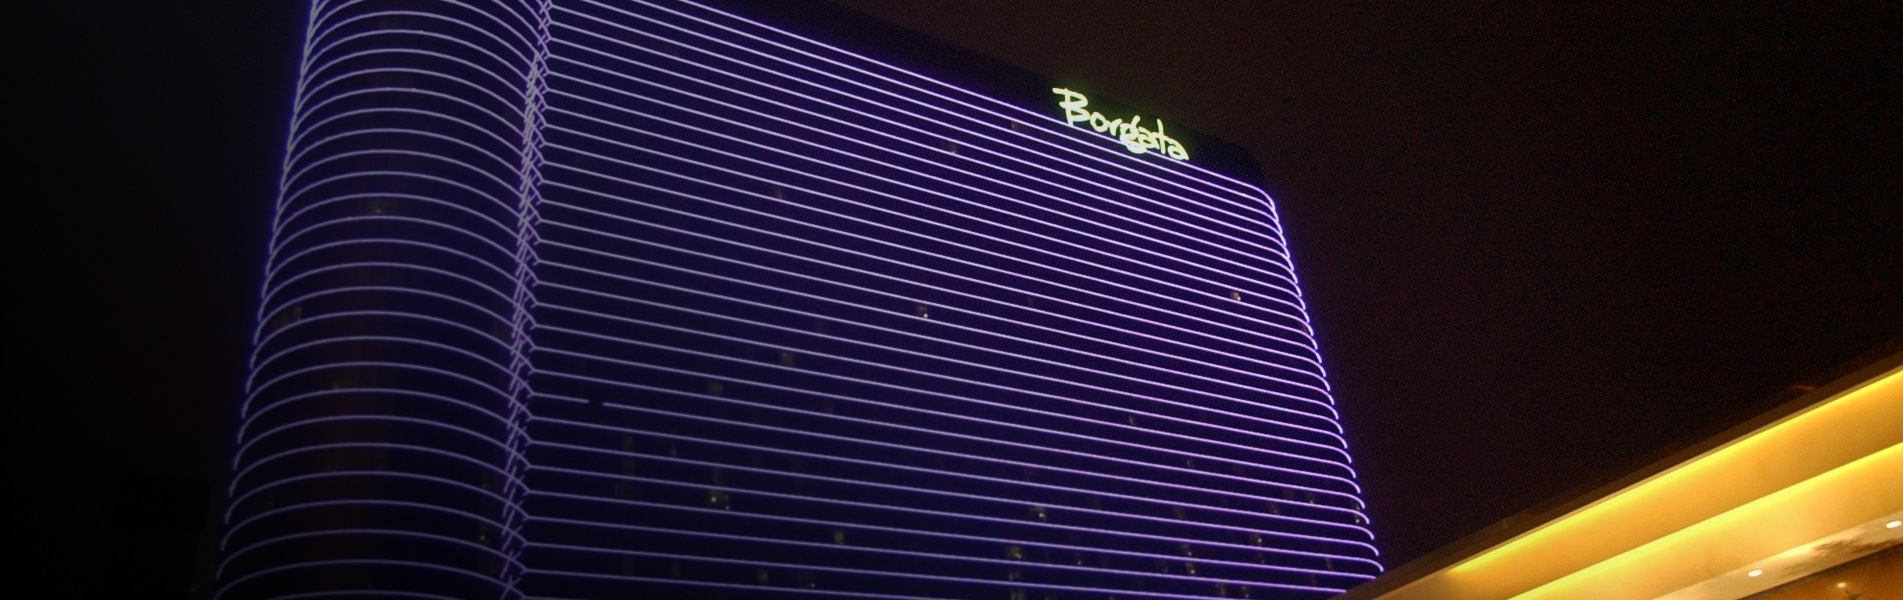 Borgata Casino Atlantic City 1